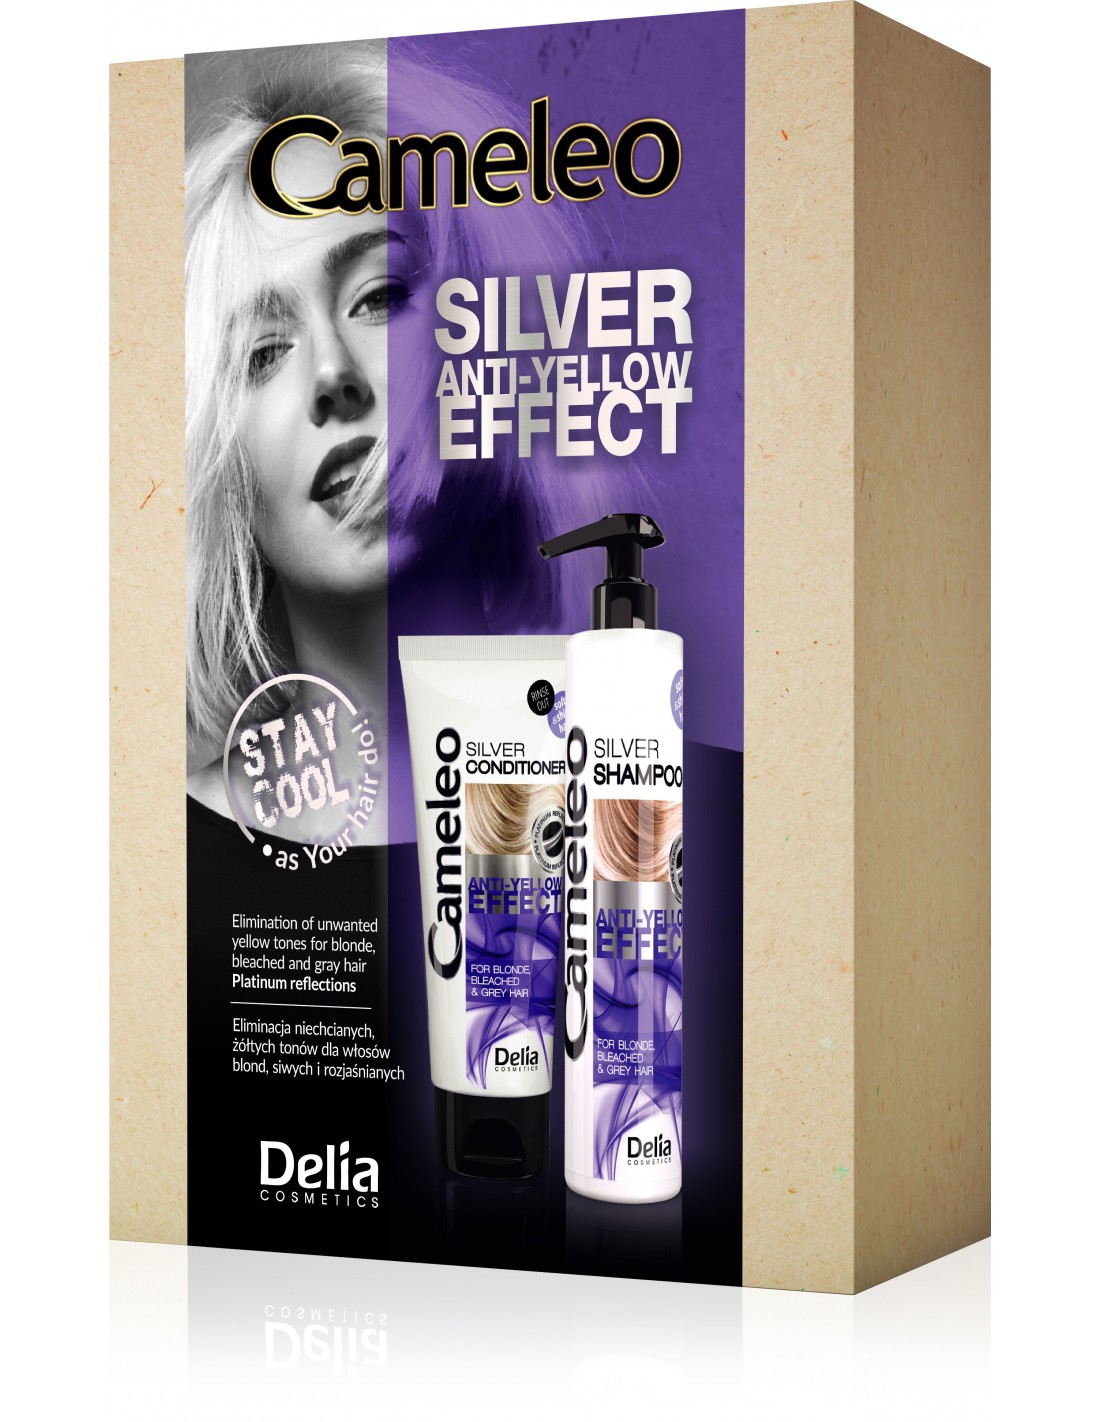 delia cameleo silver szampon do włosów blond i rozjaśnianych